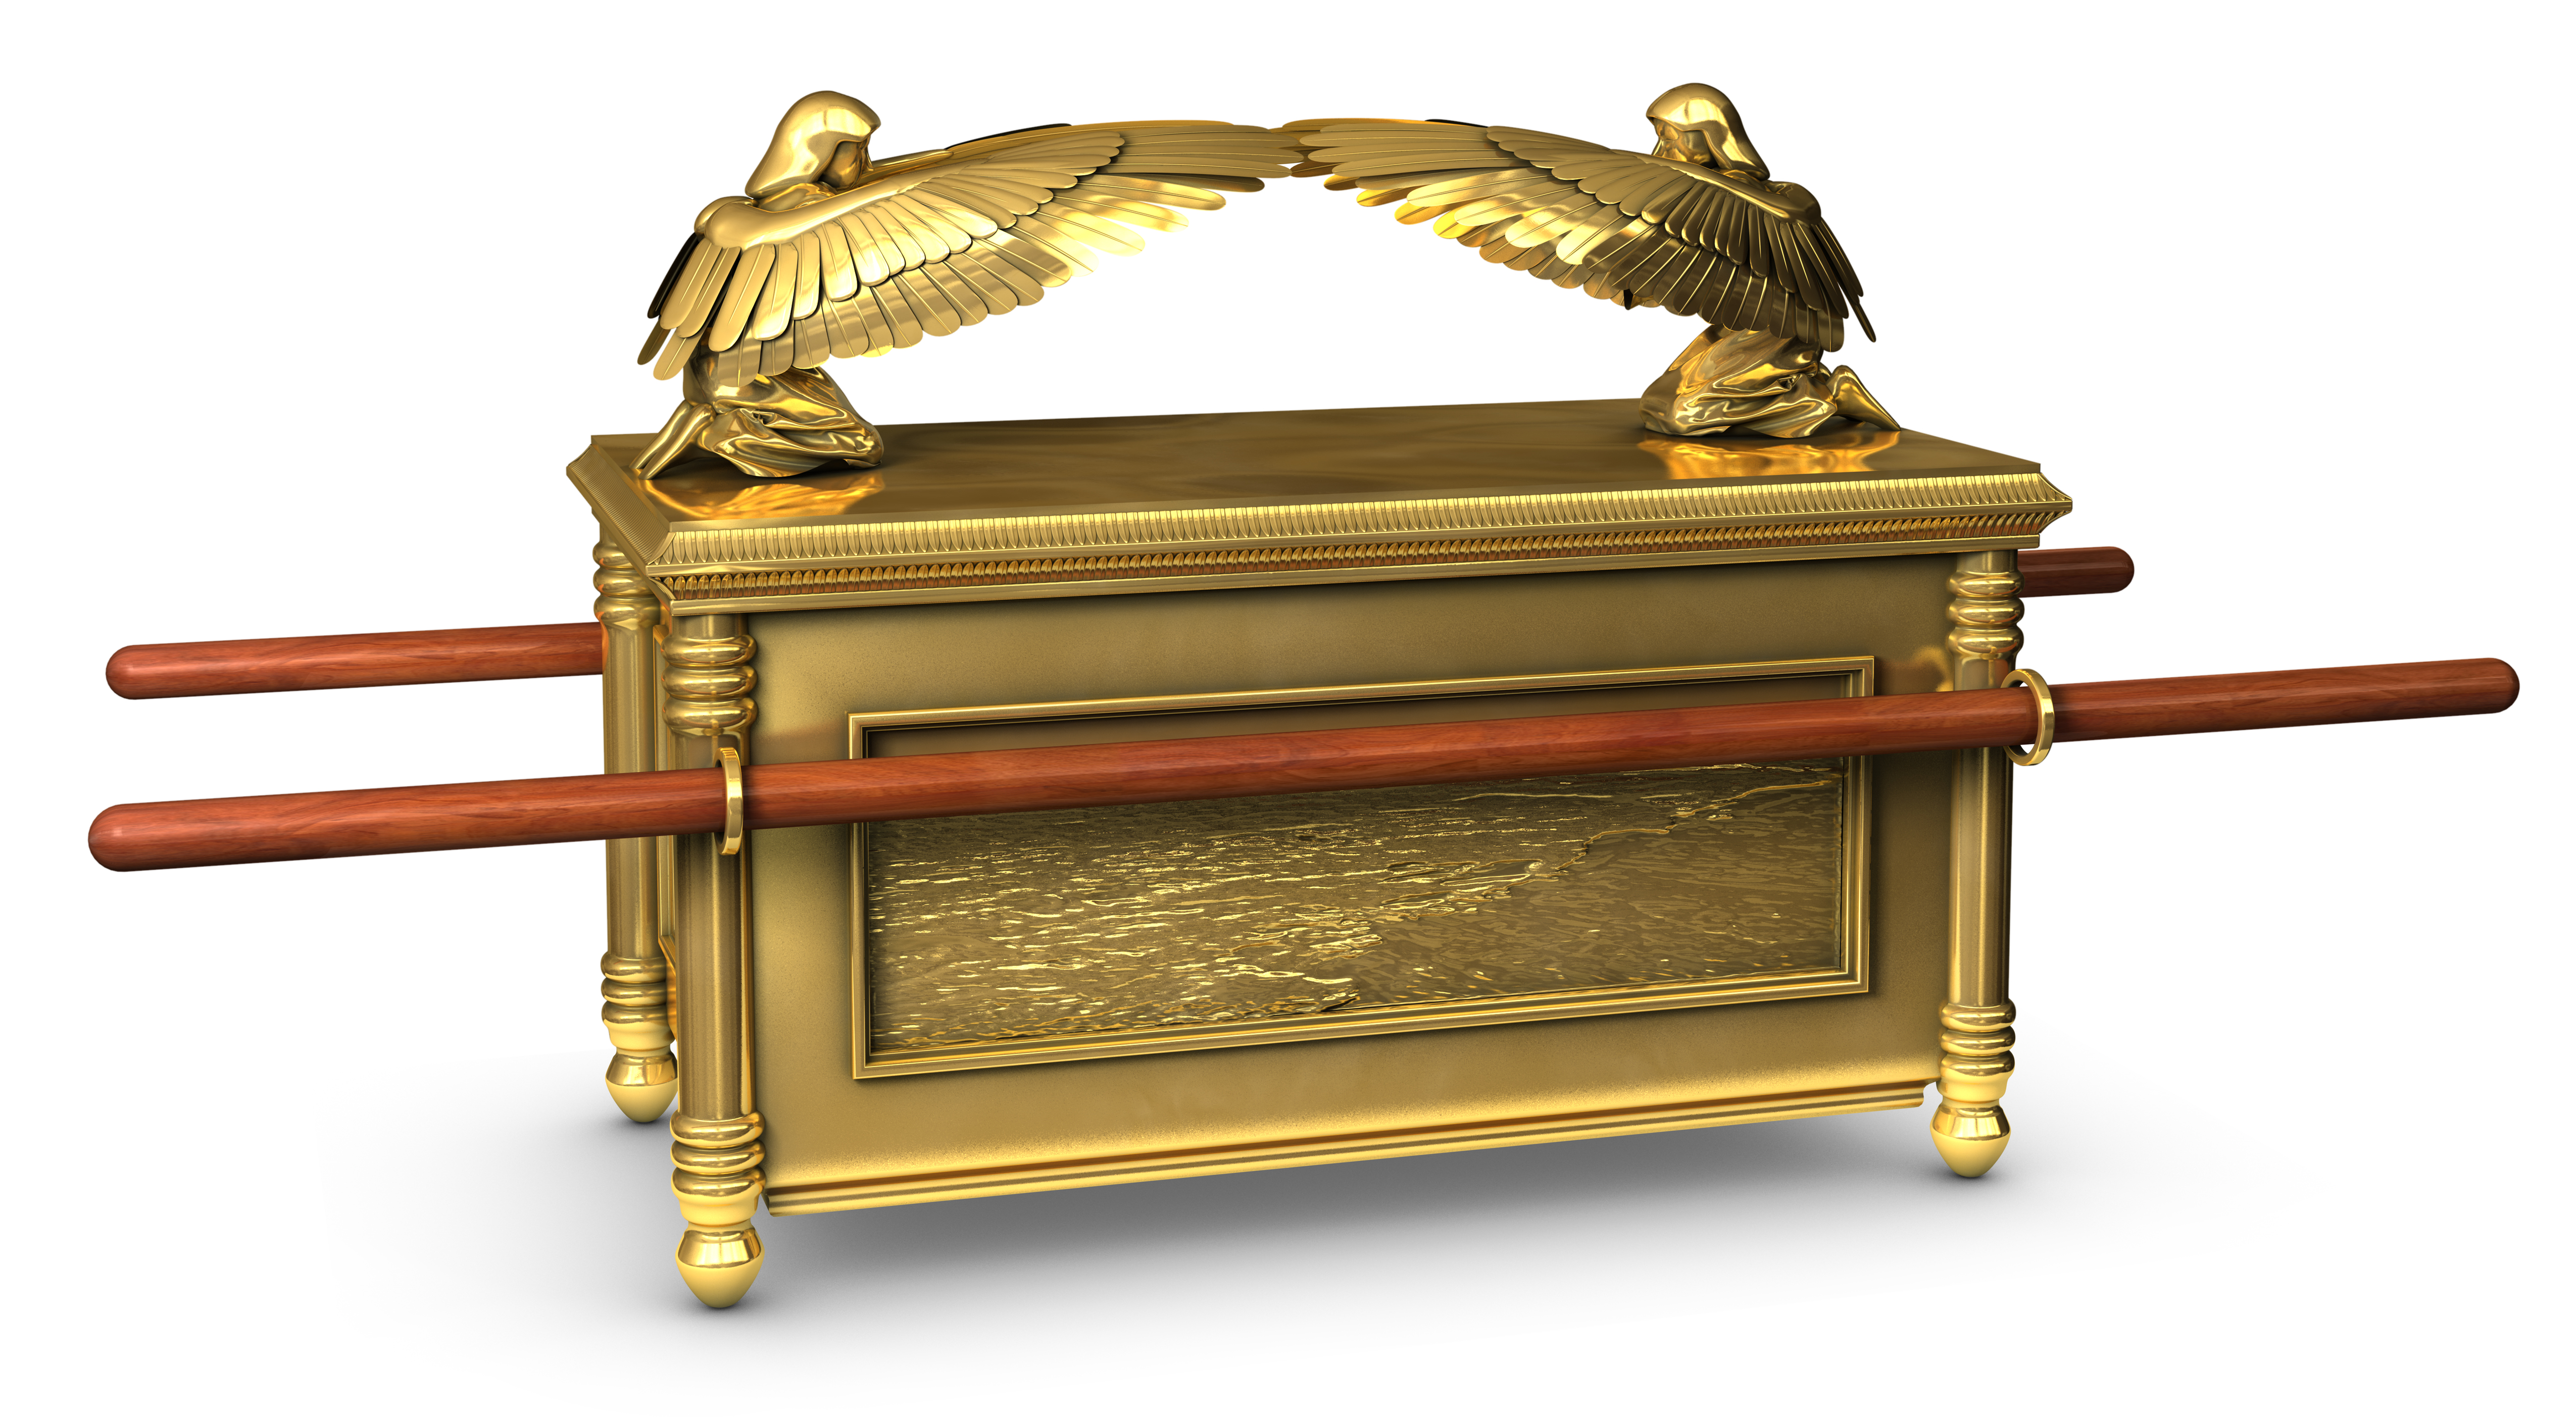 <p><strong>Ковчегът на завета</strong></p>

<p>Според еврейската Библия, ковчегът на завета представлява сандък, в който се съхраняват плочки, на които са гравирани 10-те Божи заповеди. Раклата се съхранява в храм, за който се твърди, че е построен от цар Соломон. Този храм, понякога наричан Първият храм, е бил най-свещеното място на Земята за еврейския народ, но е бил разрушен през 587г. пр.н.е., когато вавилонска армия, водена от цар Навуходоносор II, завладява Йерусалим и ограбва града. Не е ясно какво се е случва с ковчега на завета и местоположението му отдавна е повод на спекулации.</p>